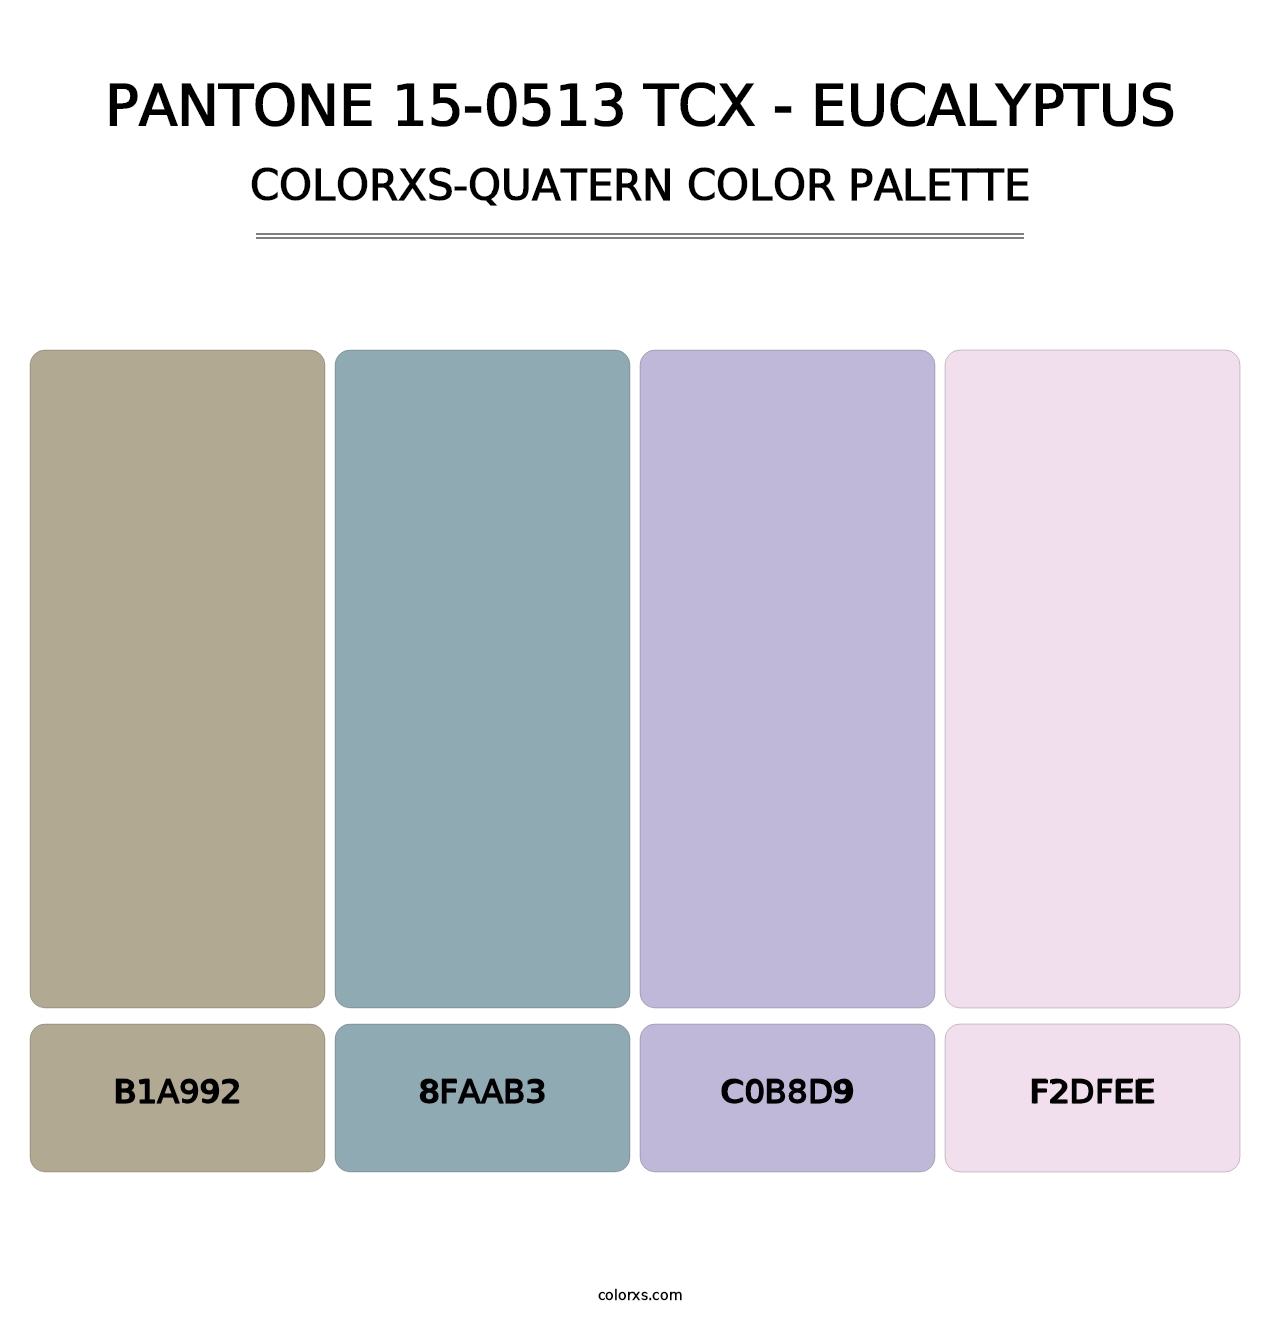 PANTONE 15-0513 TCX - Eucalyptus - Colorxs Quatern Palette